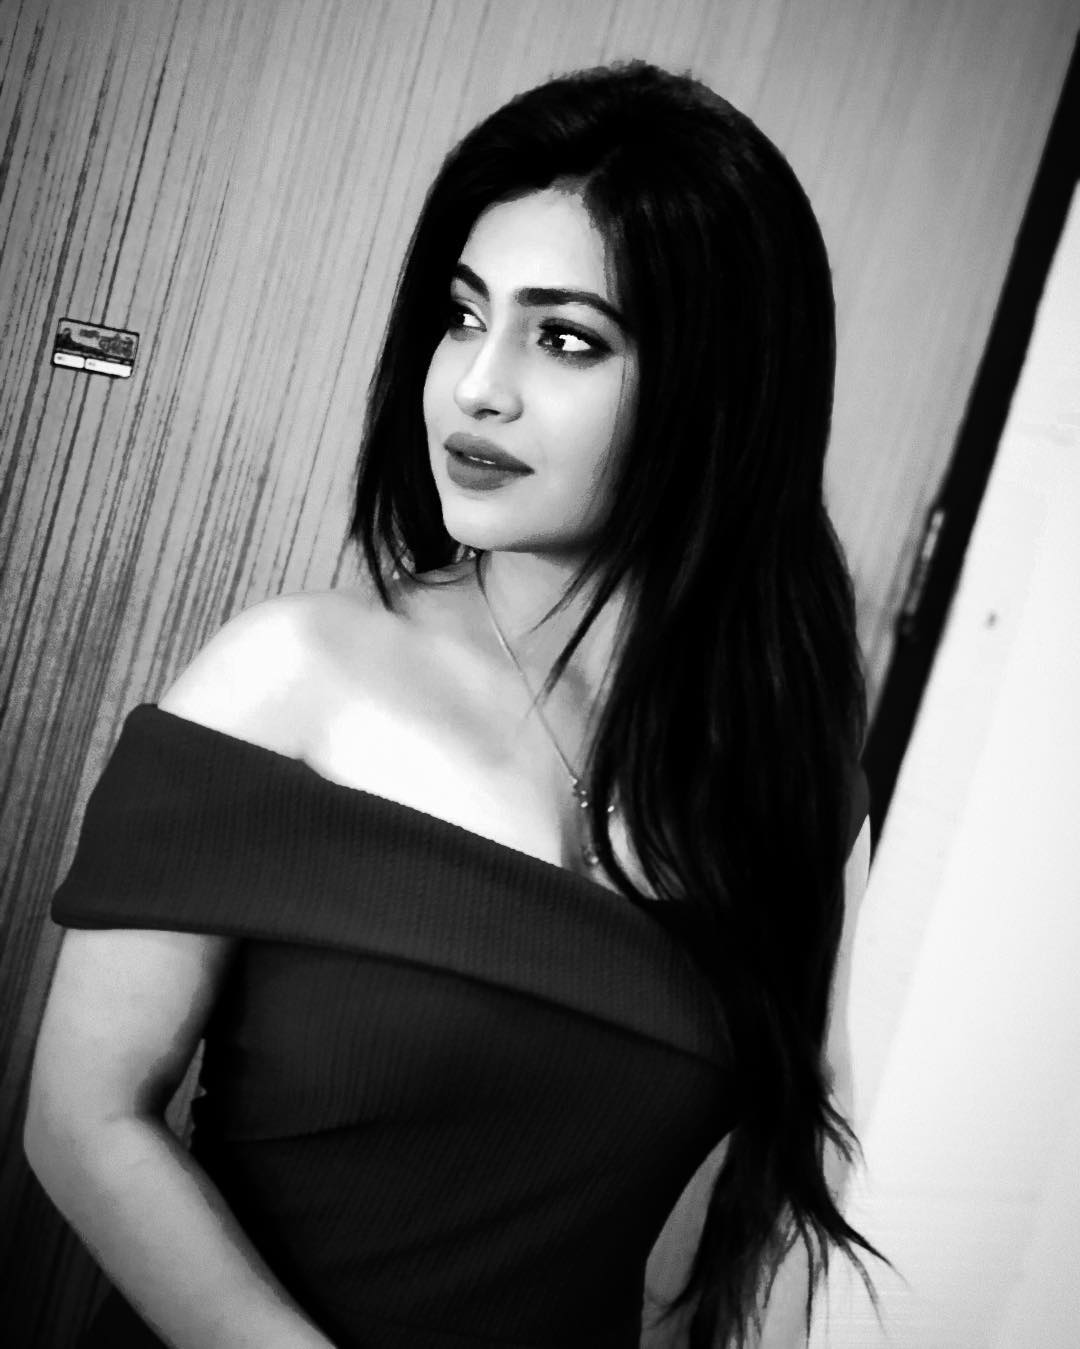 1080px x 1349px - Beautiful bengali television actress Jasmine Roy hot photos ...